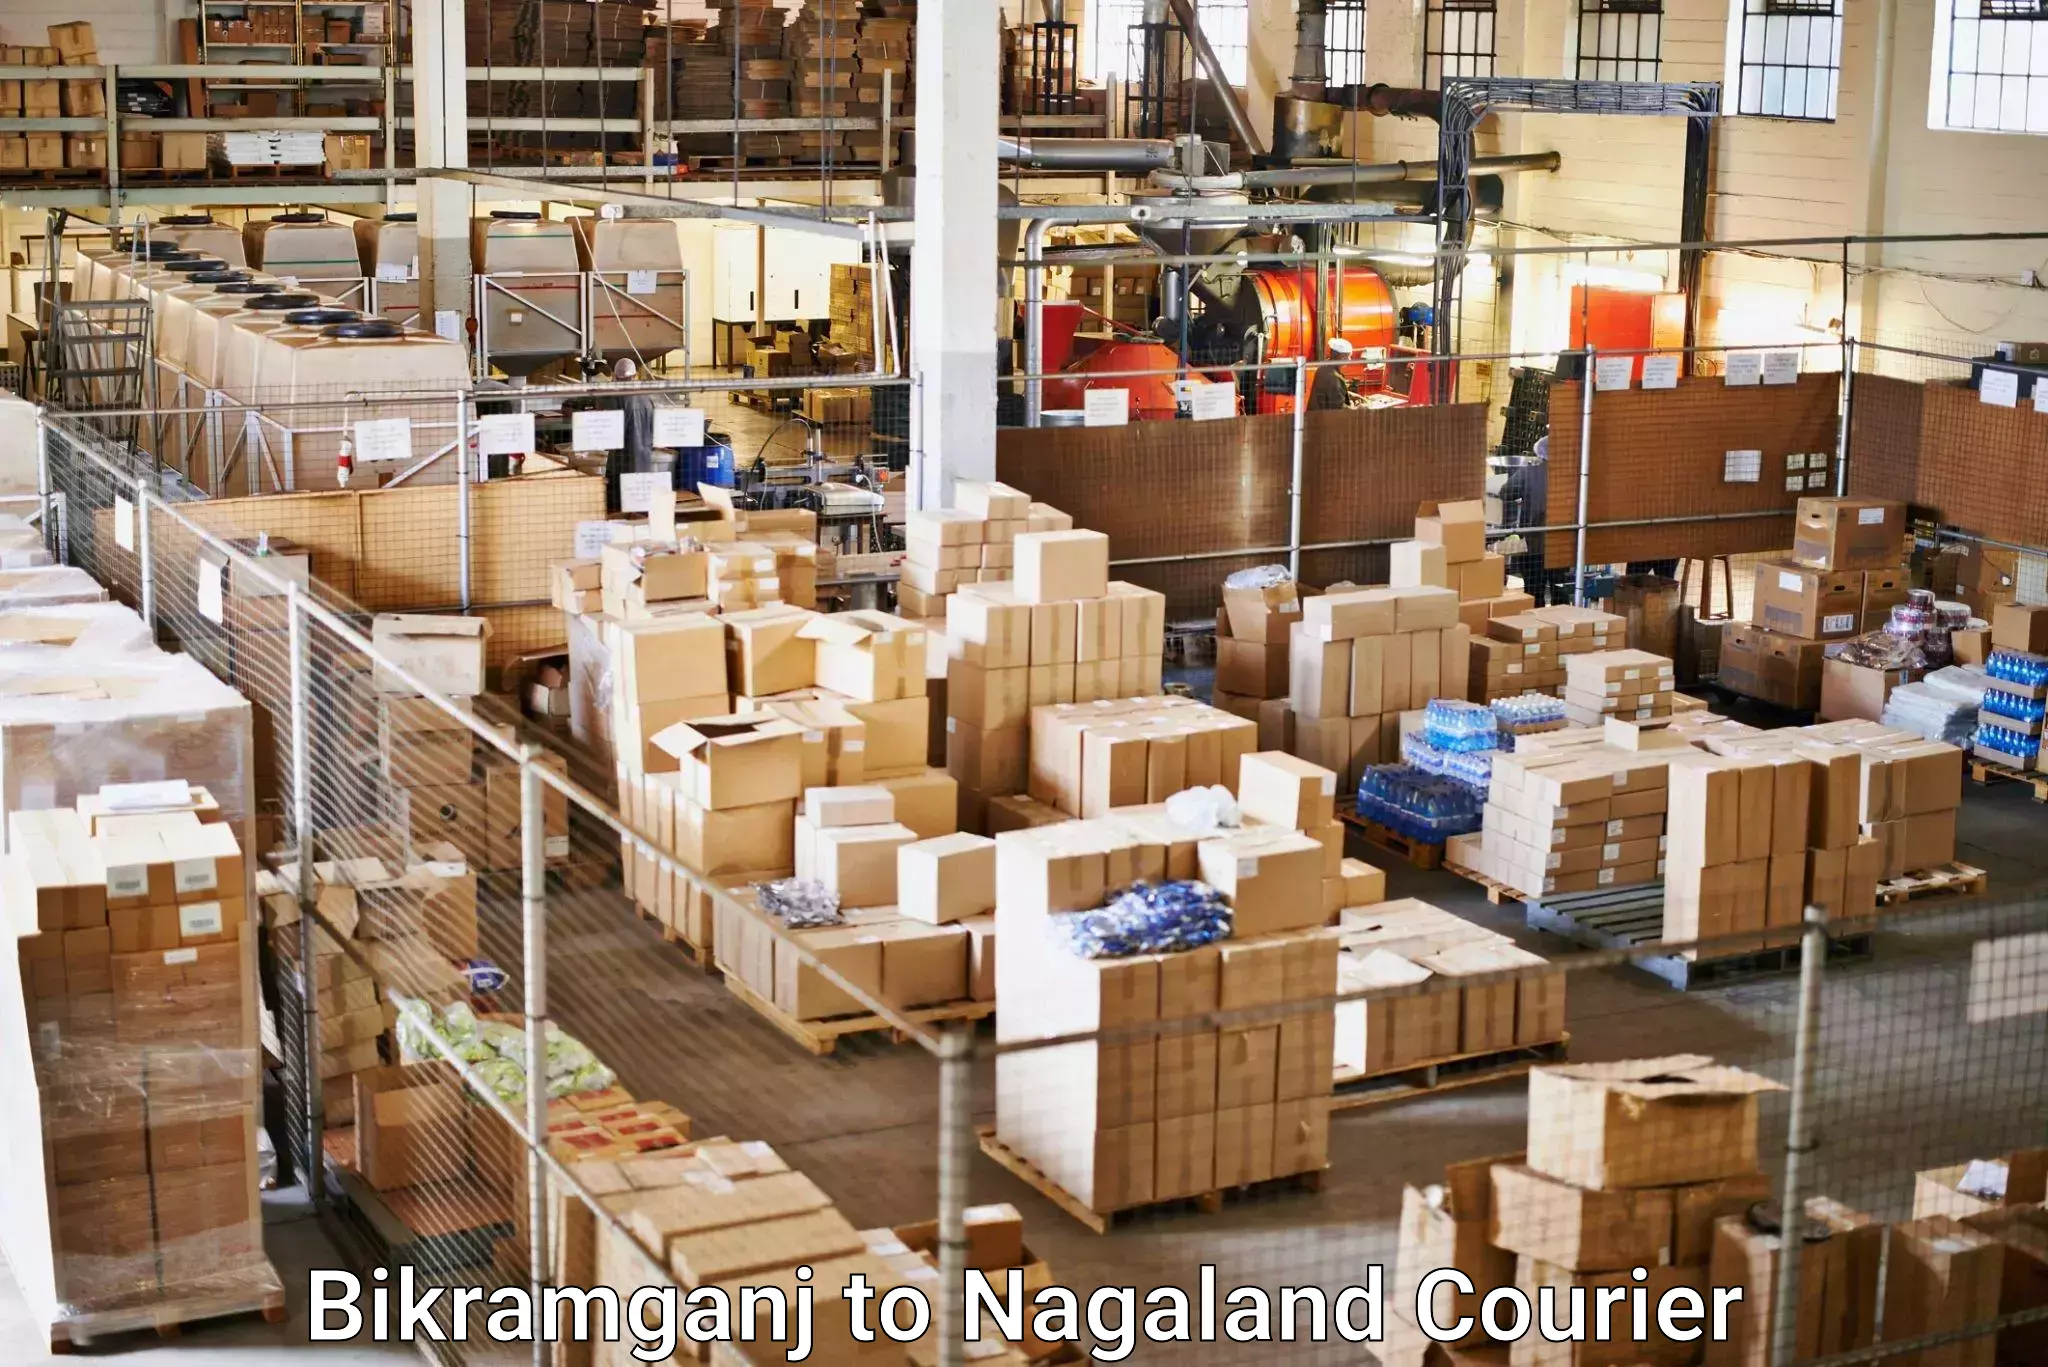 Same-day delivery solutions Bikramganj to Nagaland